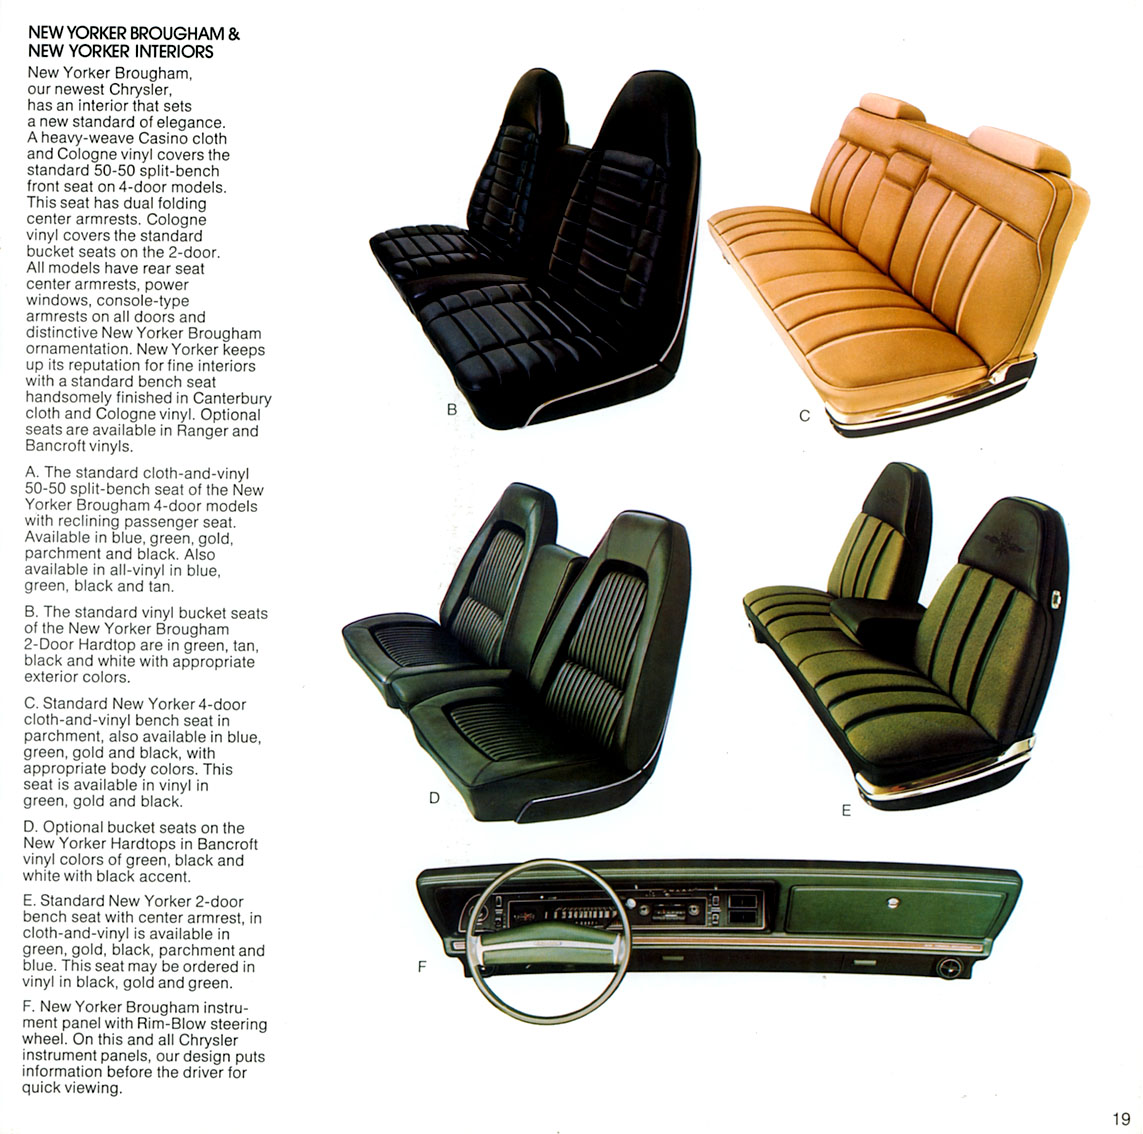 1972 Chrysler Full Line Brochure Page 18